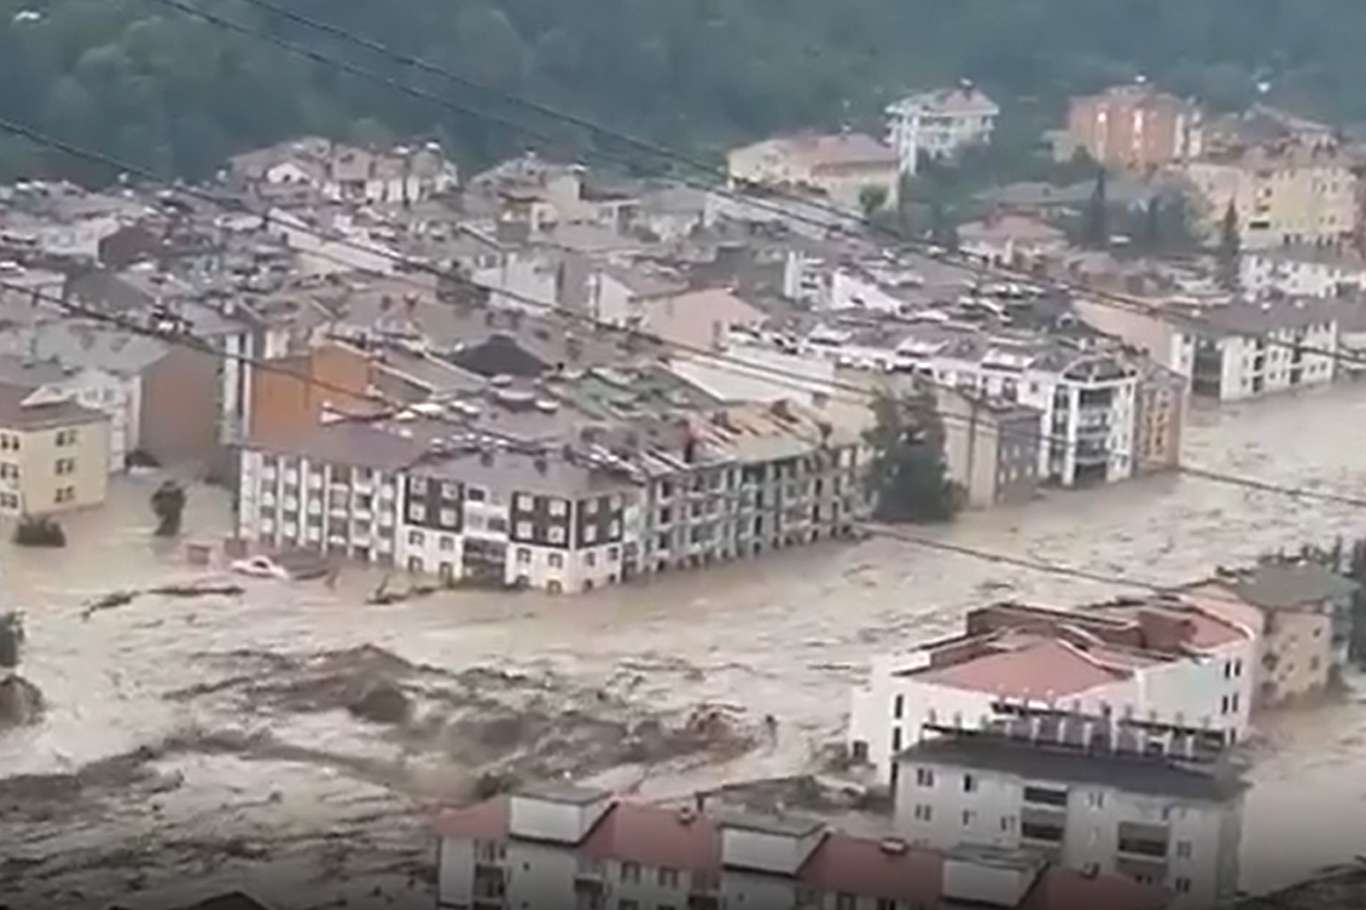 Τουρκία - Εκκενώθηκε νοσοκομείο μετά τις σαρωτικές πλημμύρες - Αγνοείται ηλικιωμένη